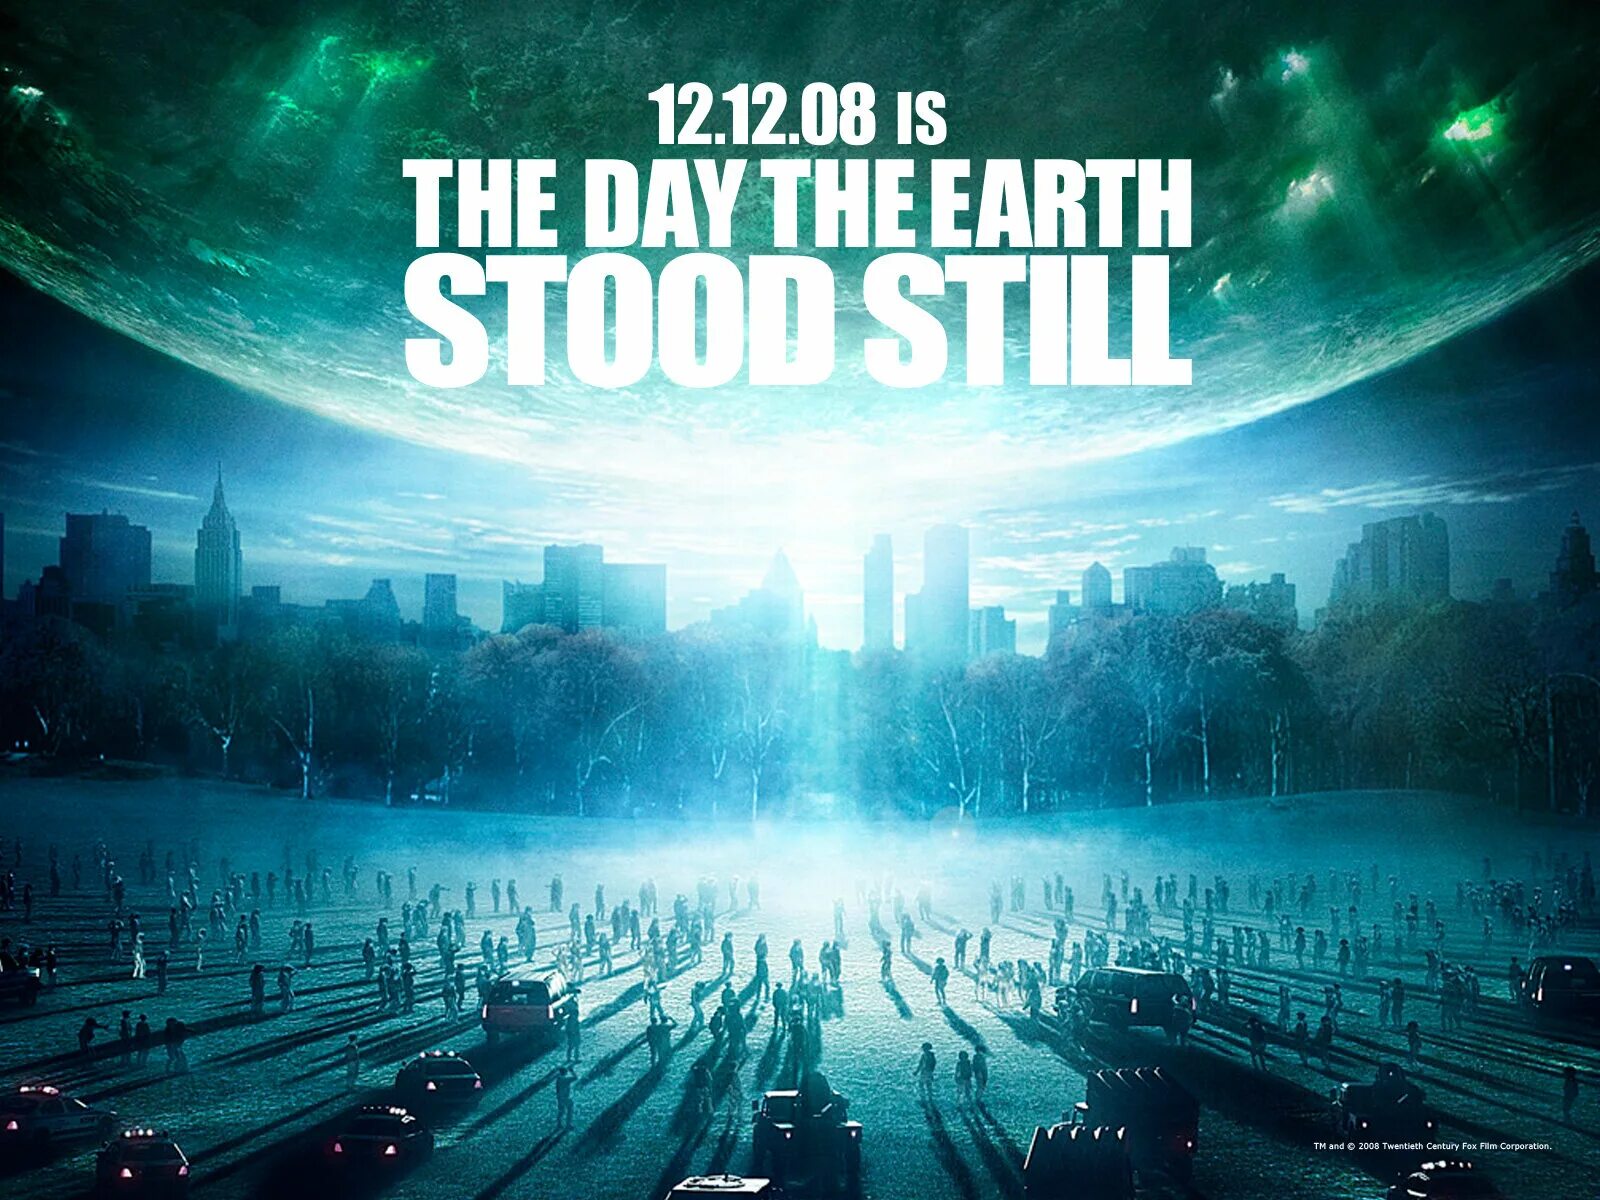 "День, когда земля остановилась" США, 2008 Г.. День когда земля остановилась 2008 Постер. День когда земля остановилась фото.